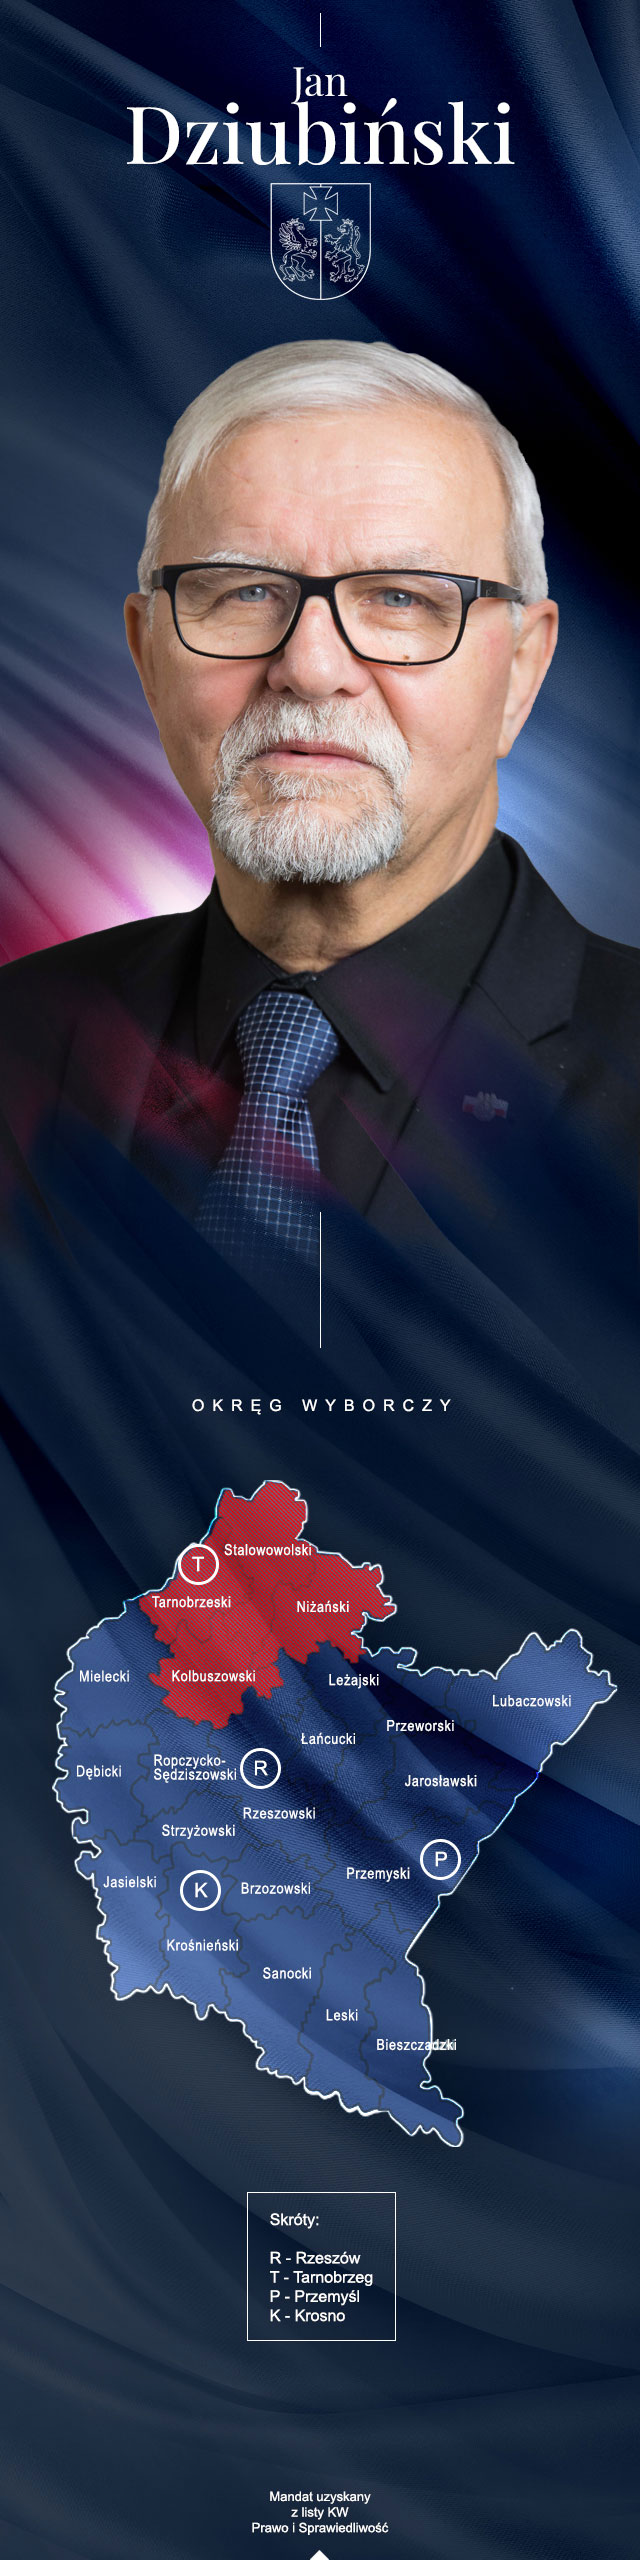 Jan Dziubiński. Grafika. Na tle granatowej flagi zdjęcie radnego oraz kontur mapy Podkarpacia z widocznymi granicami administracyjnymi i nazwami powiatów.